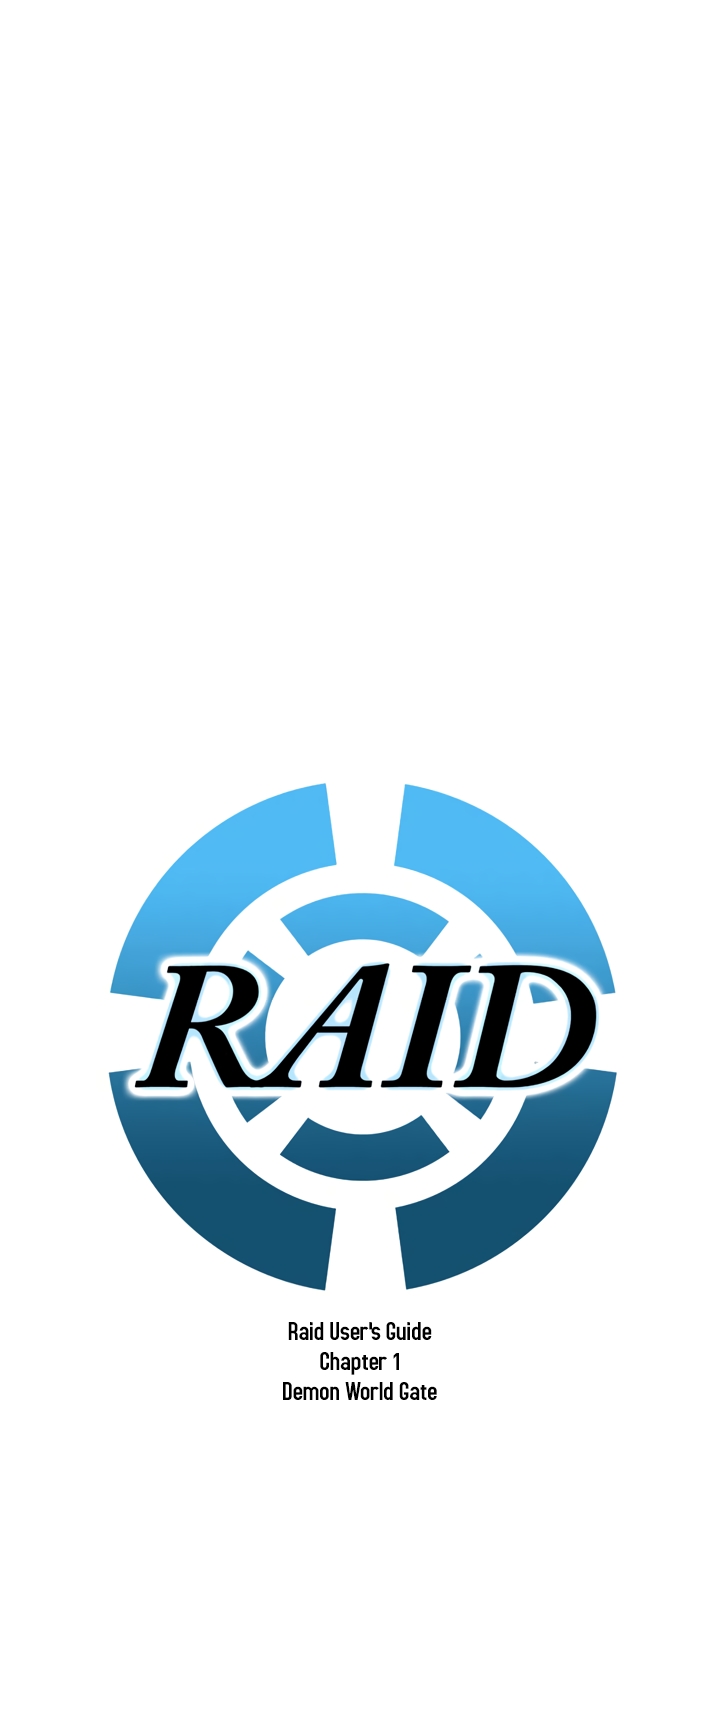 Raid Ch. 0.5 Raid User's Guide, Demon World Gate